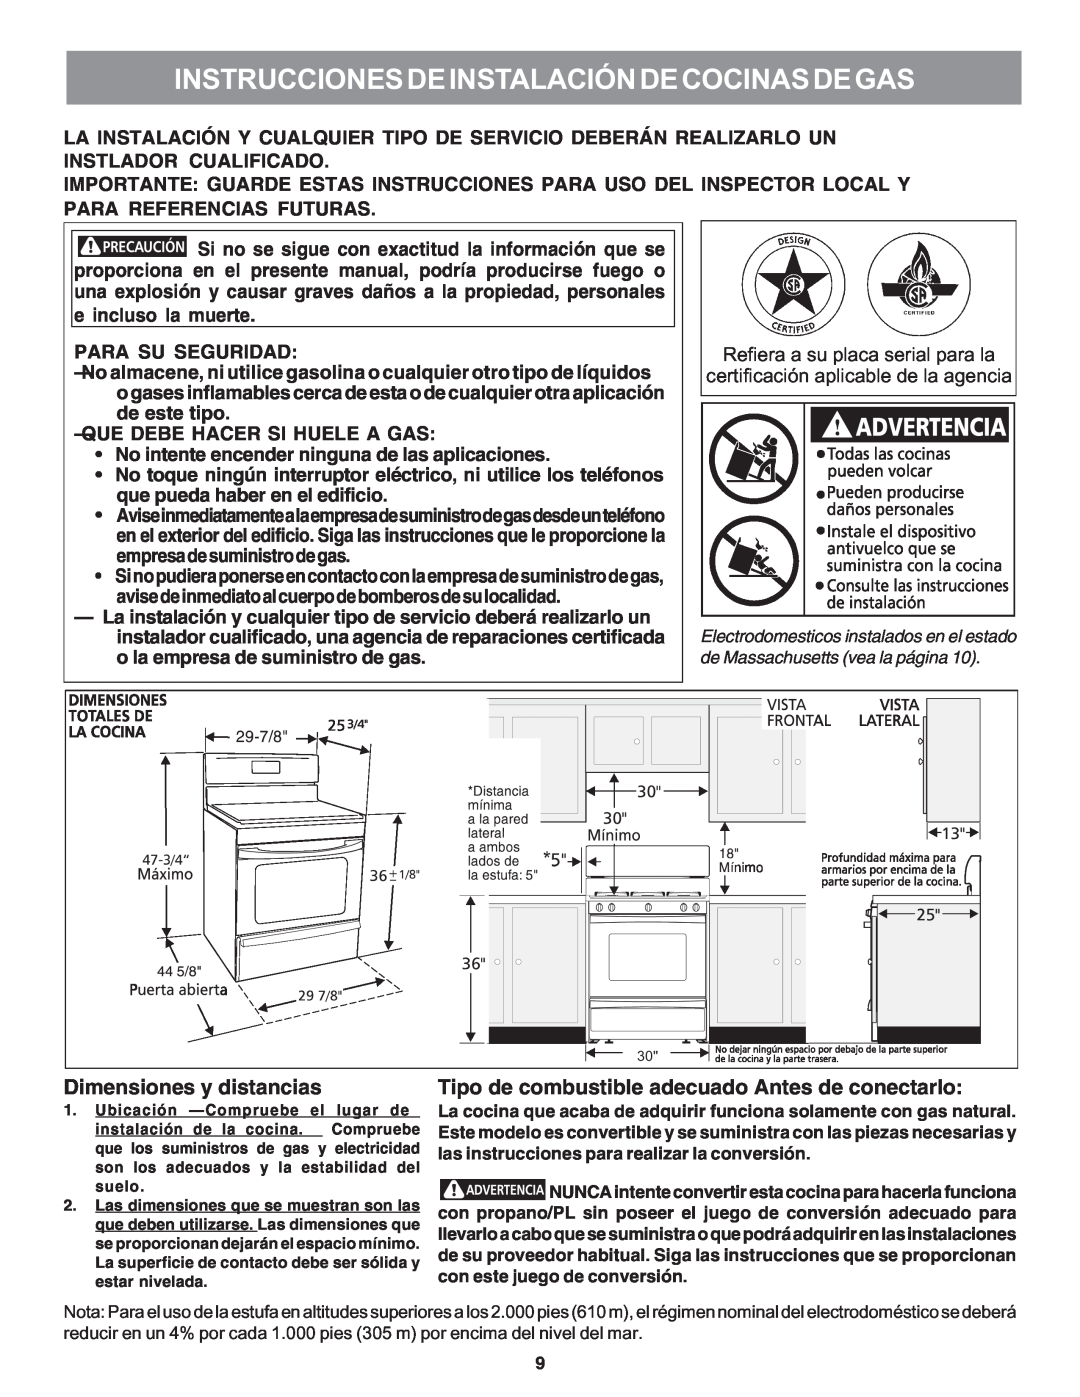 Electrolux 316469104 installation instructions Instrucciones De Instalación De Cocinas De Gas, Dimensiones y distancias 